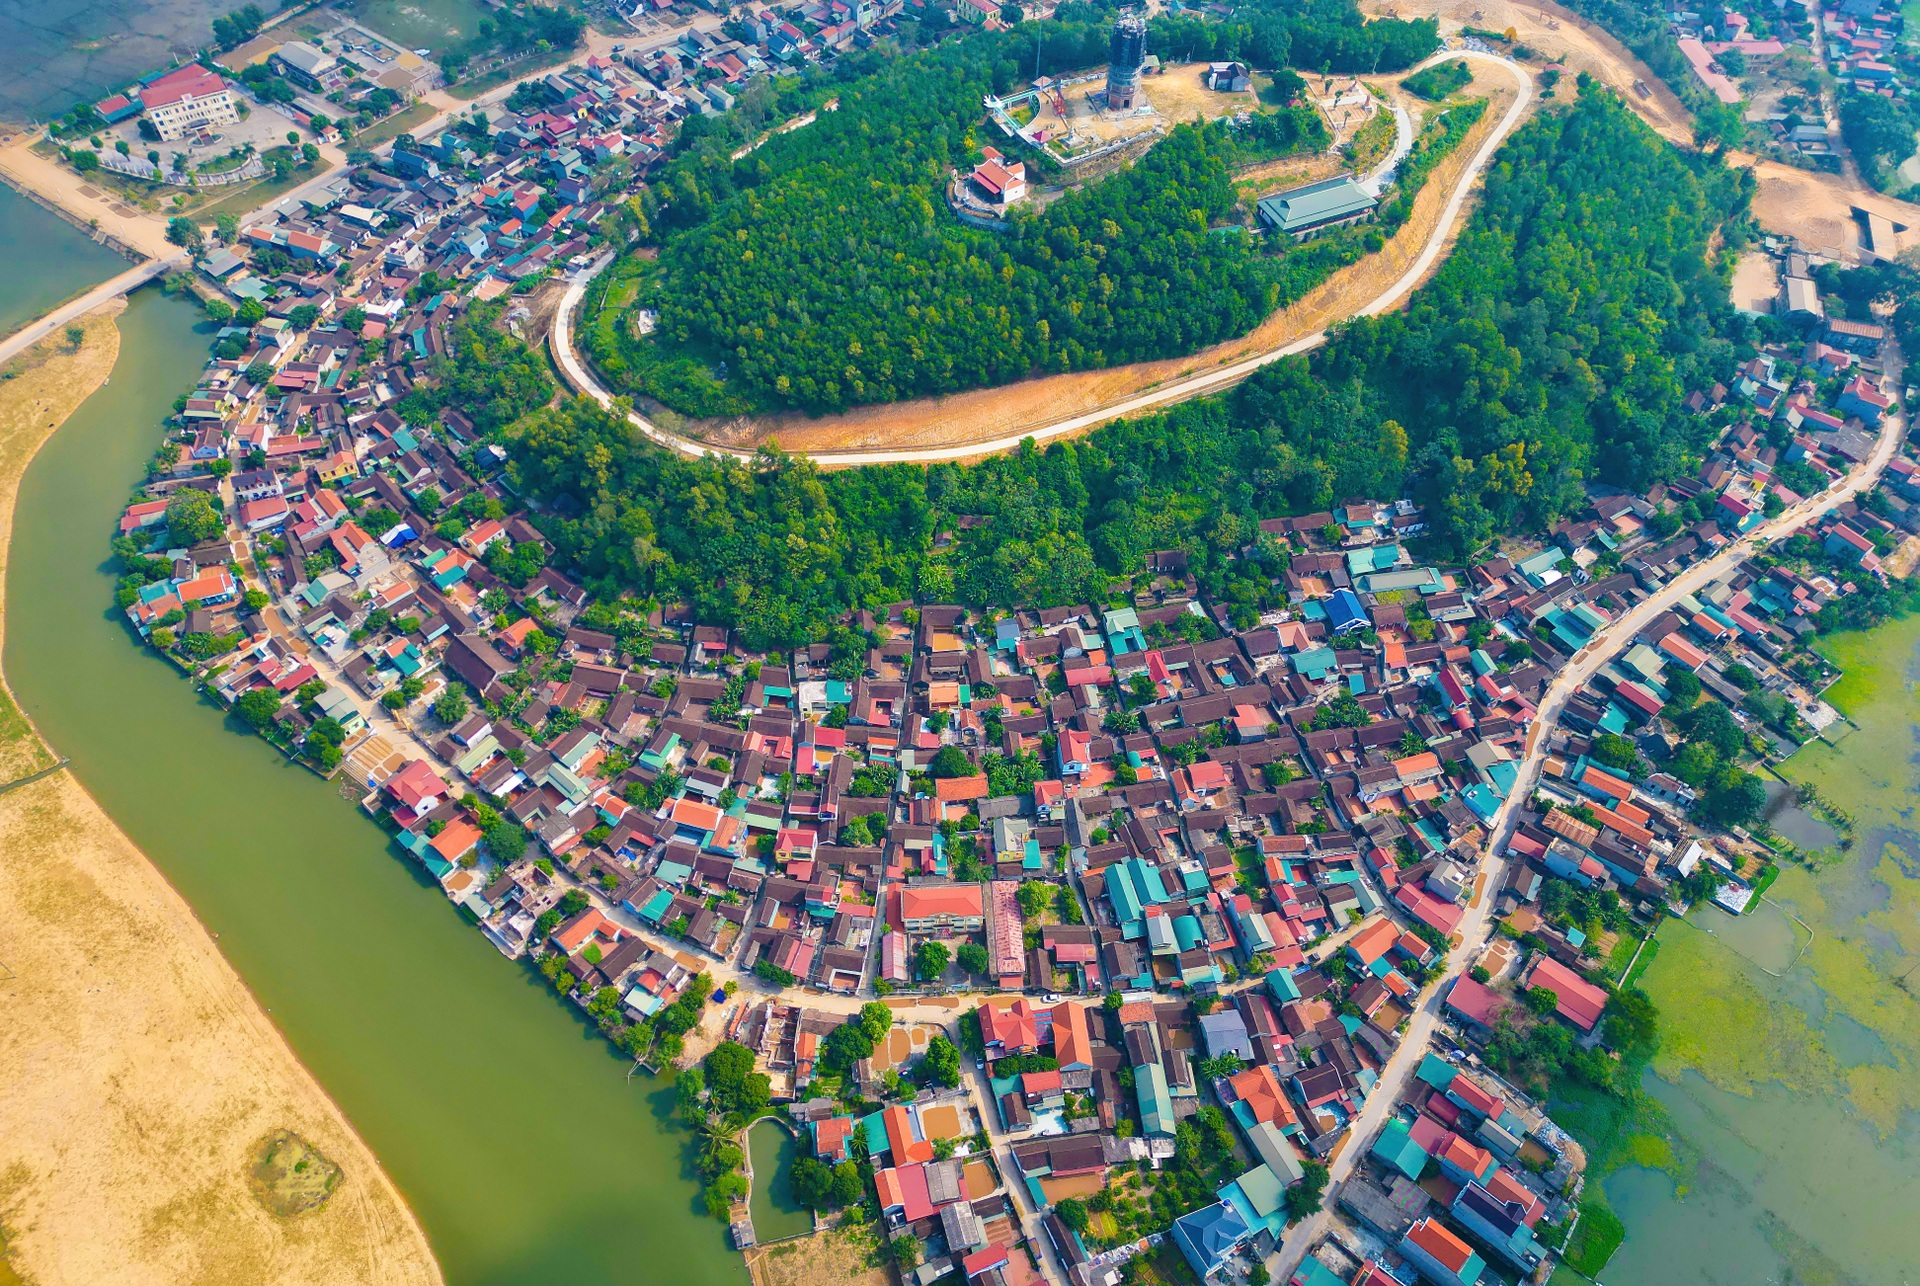 Ngôi làng đặc biệt ở Thanh Hóa, nơi phát hiện cụm mộ cổ 3 người chôn chung - 1